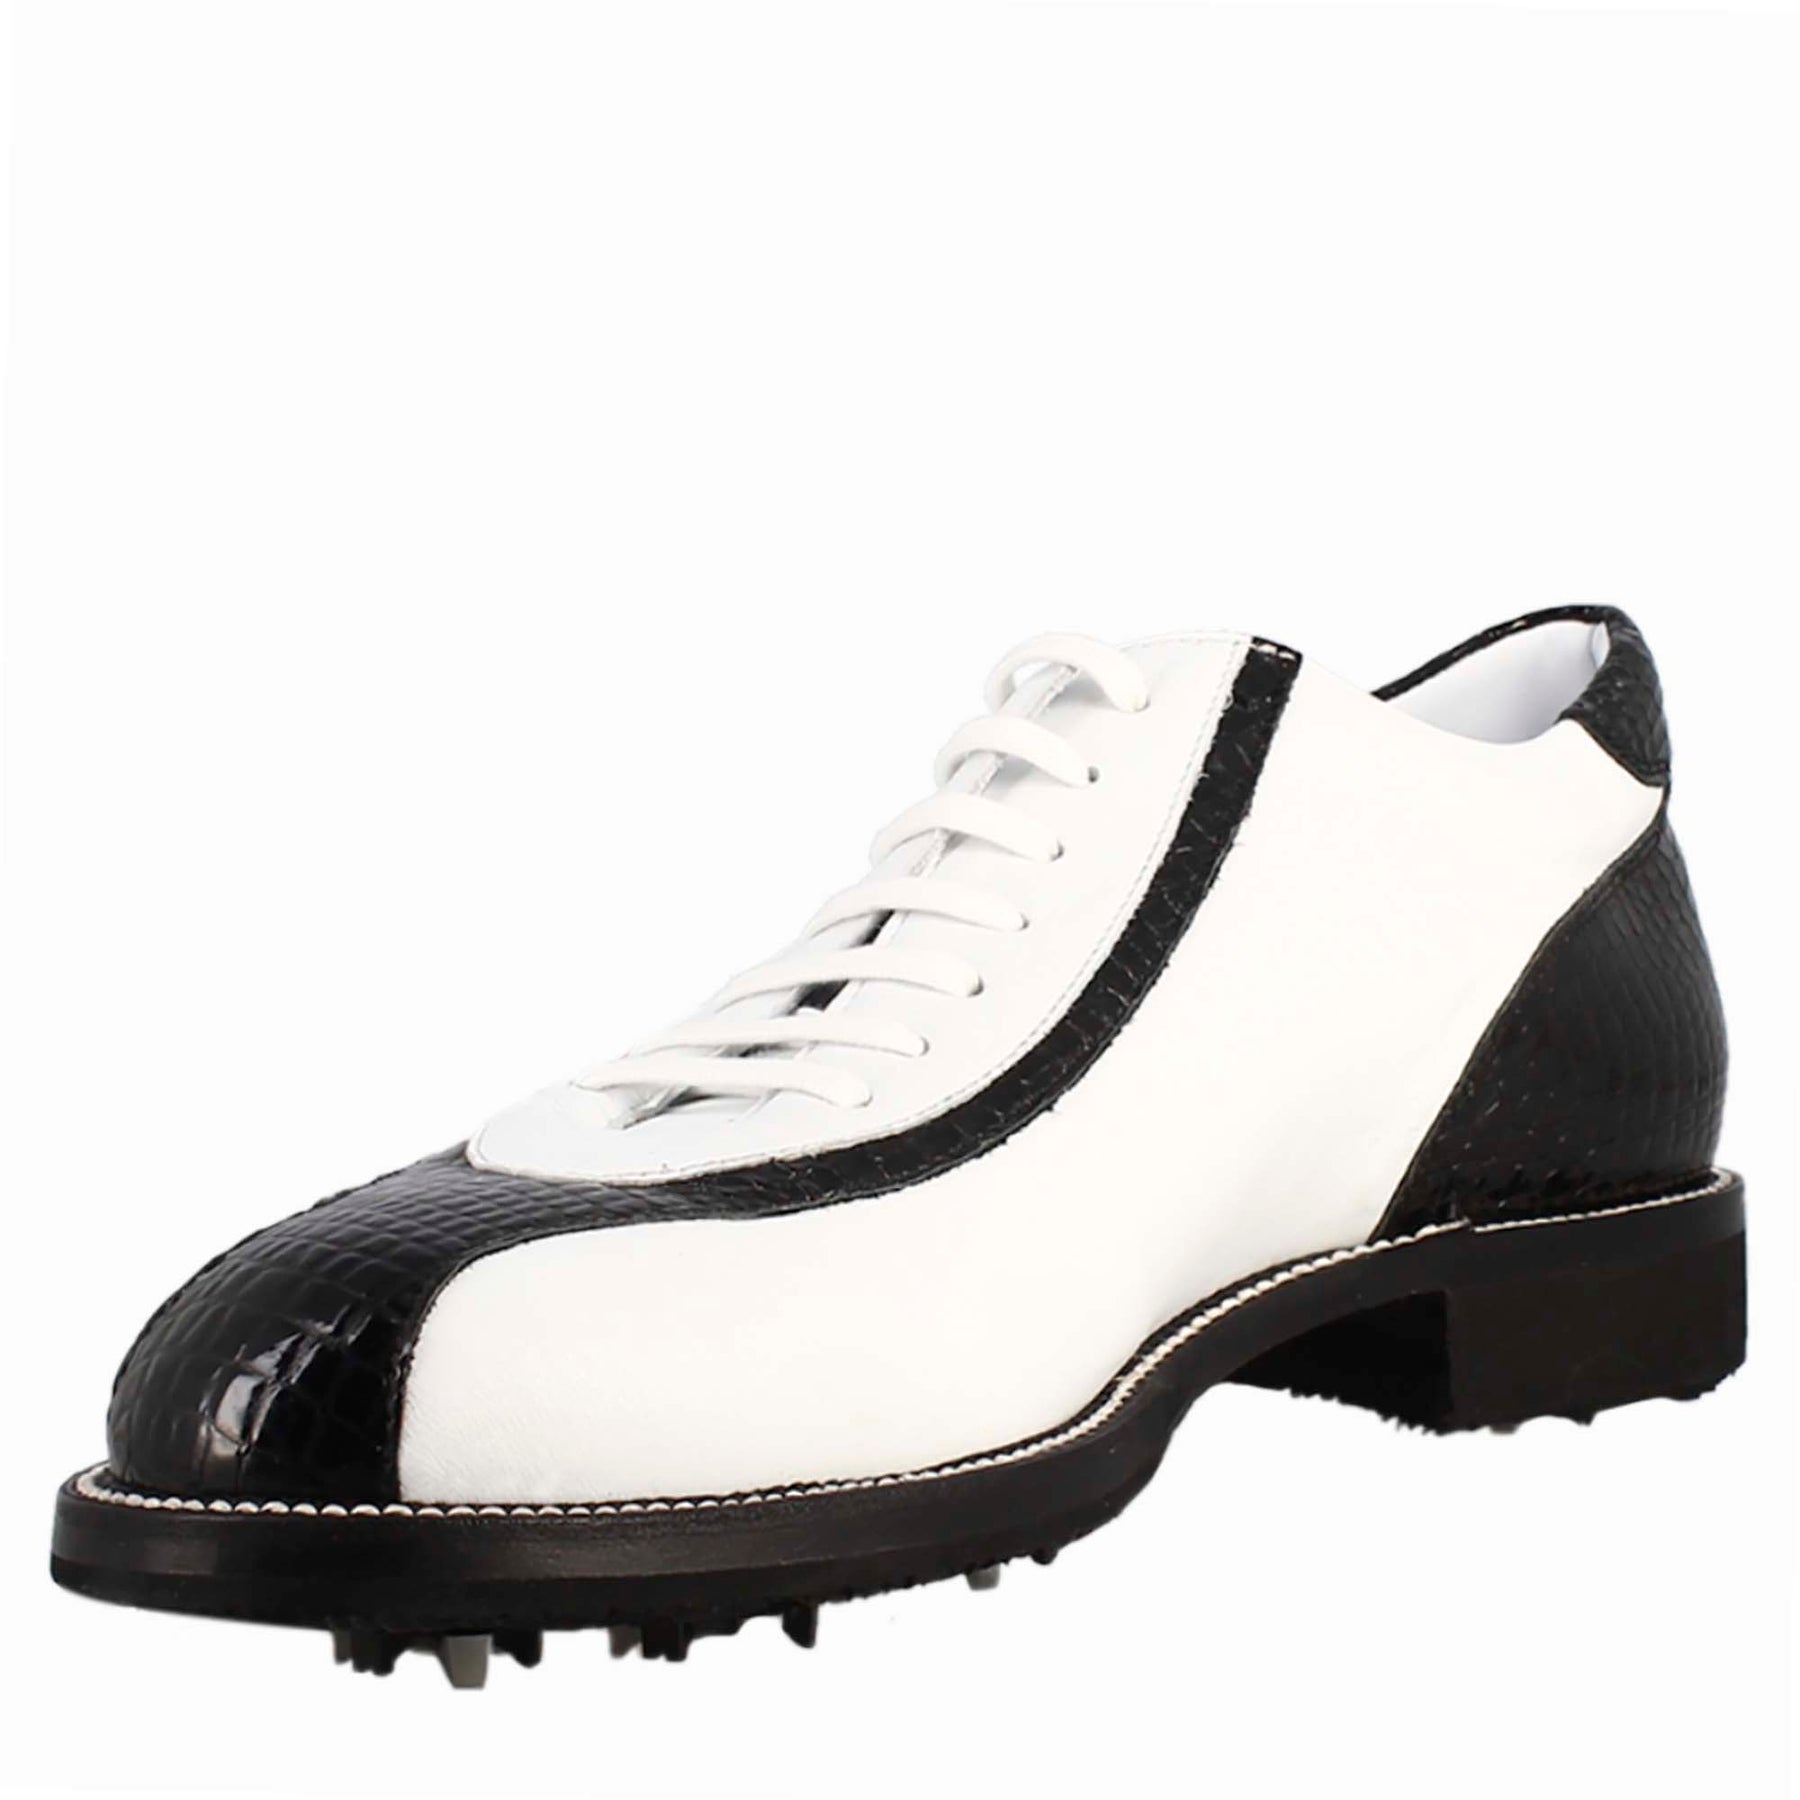 Scarpe golf da donna artigianali in pelle bianco e dettagli in cocco nero